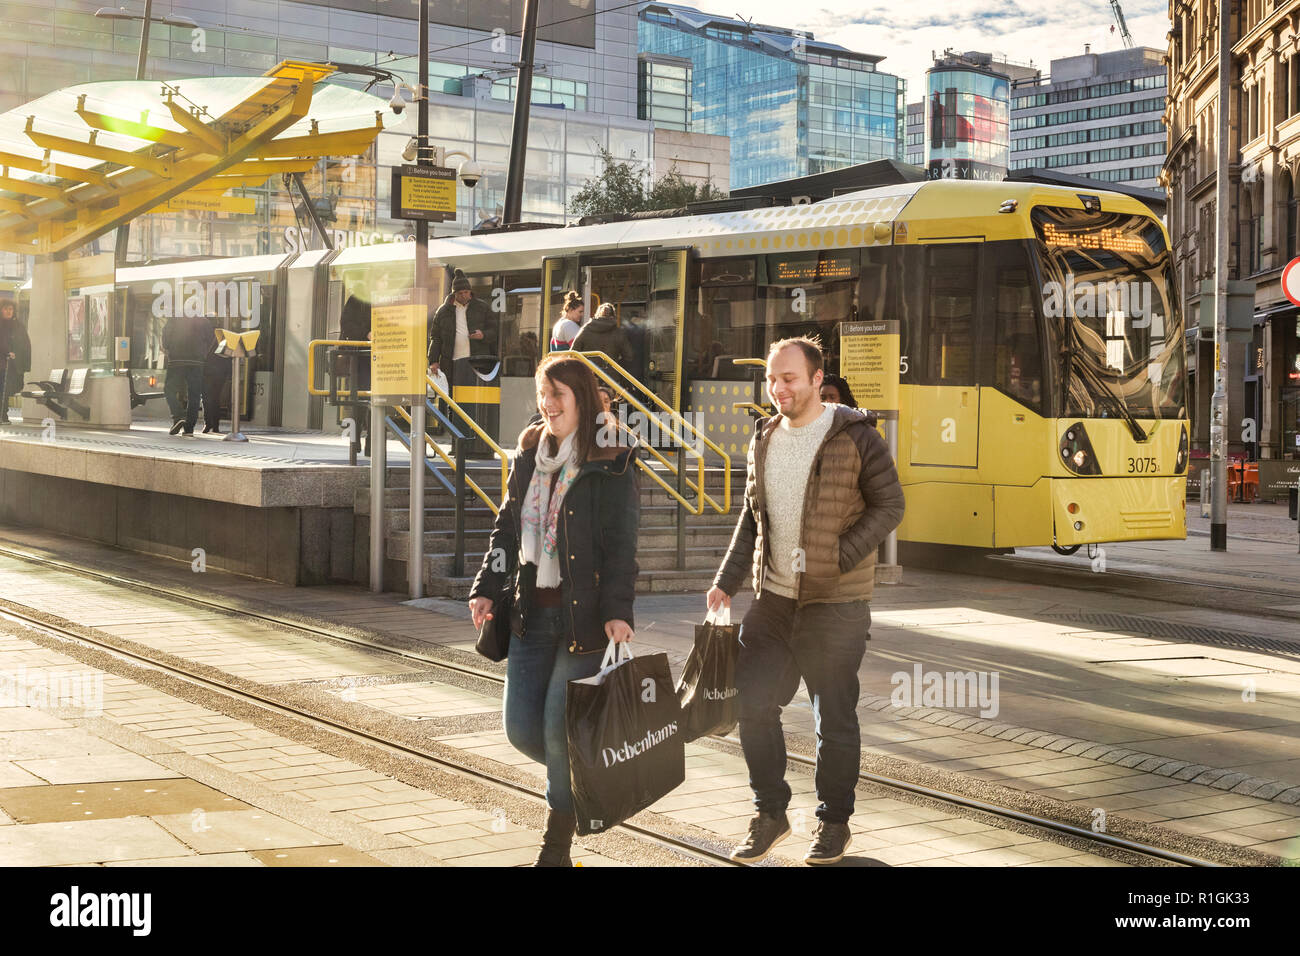 2. November 2018: Manchester, Großbritannien - Junges Paar lächelnd, mit Debenhams Einkaufstaschen, in Exchange Square, mit einem Metrolink tram hinter sich. Viel Flair. Stockfoto